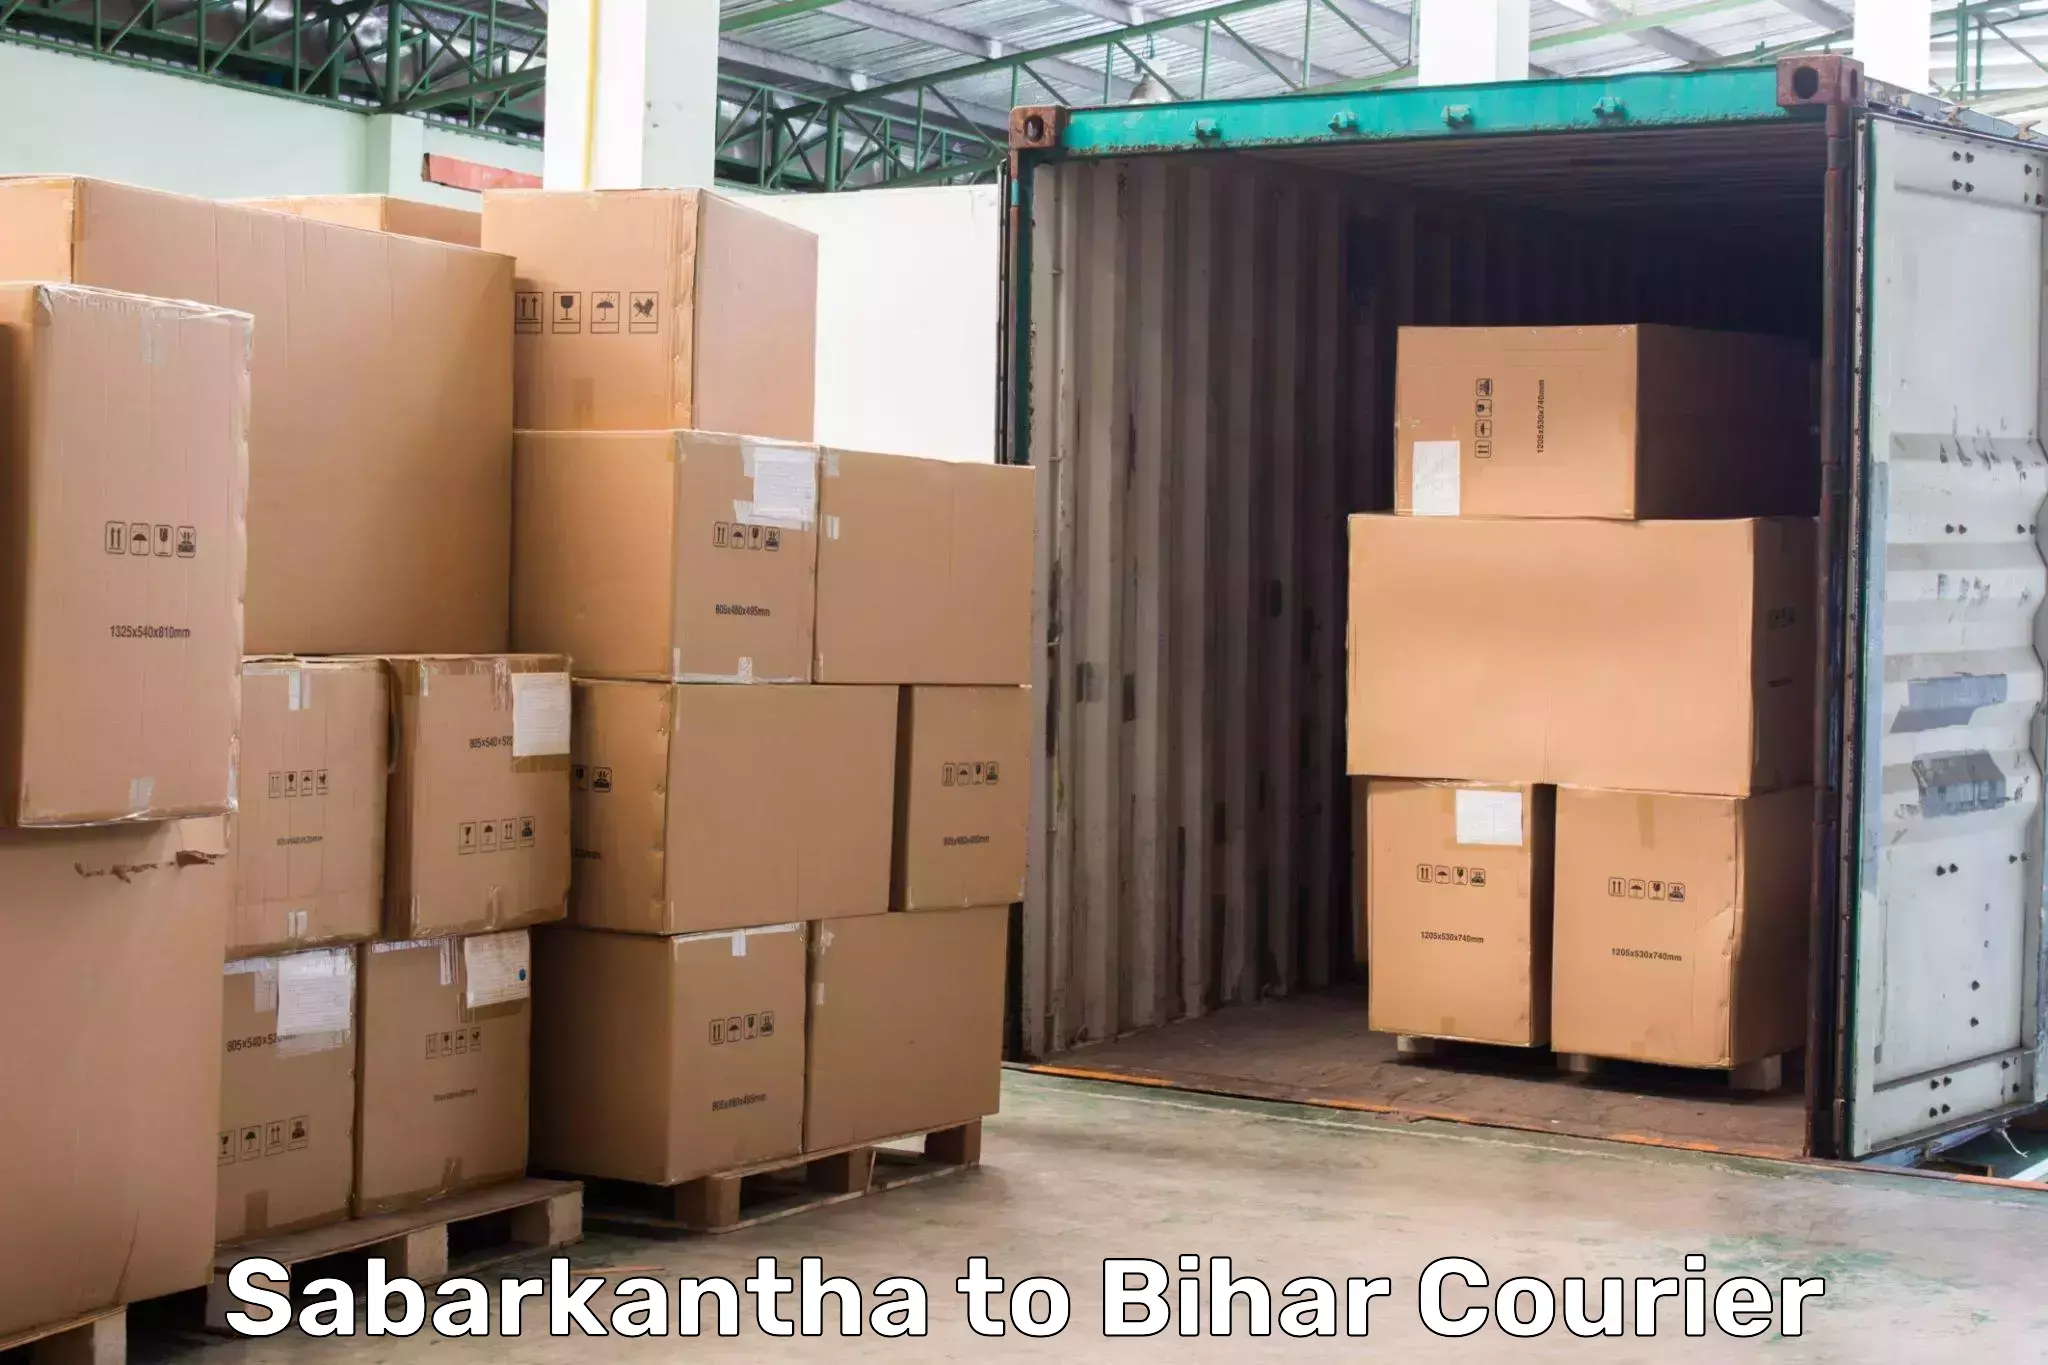 Smart shipping technology Sabarkantha to Danapur